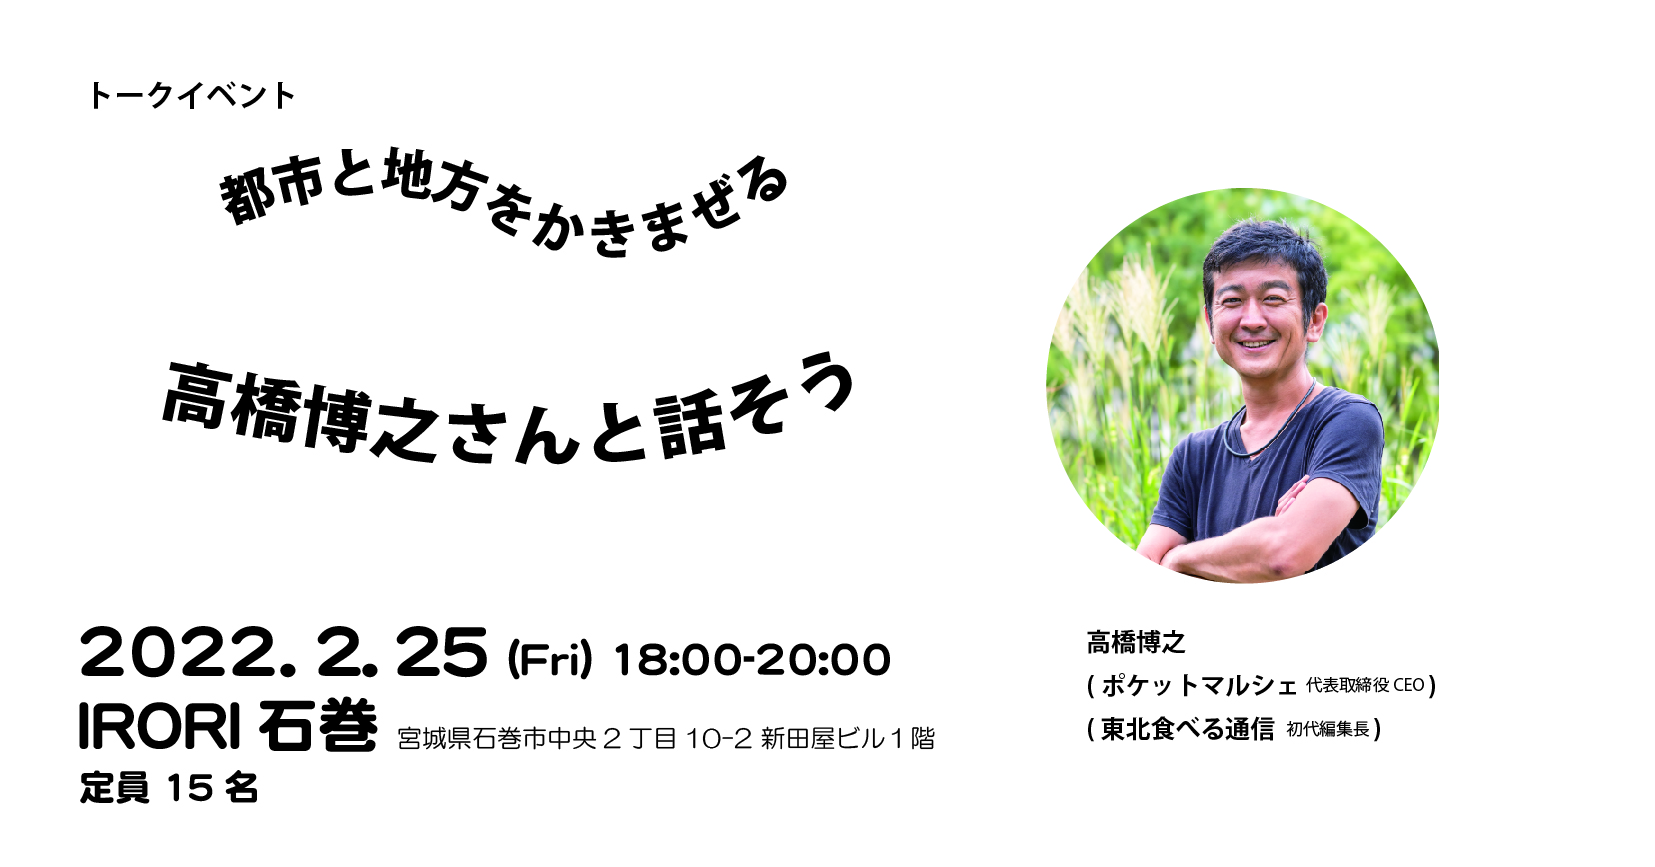 都市と地方をかきまぜる 高橋博之さんと話そう いしのまきを選ぶ 石巻市移住定住サイト